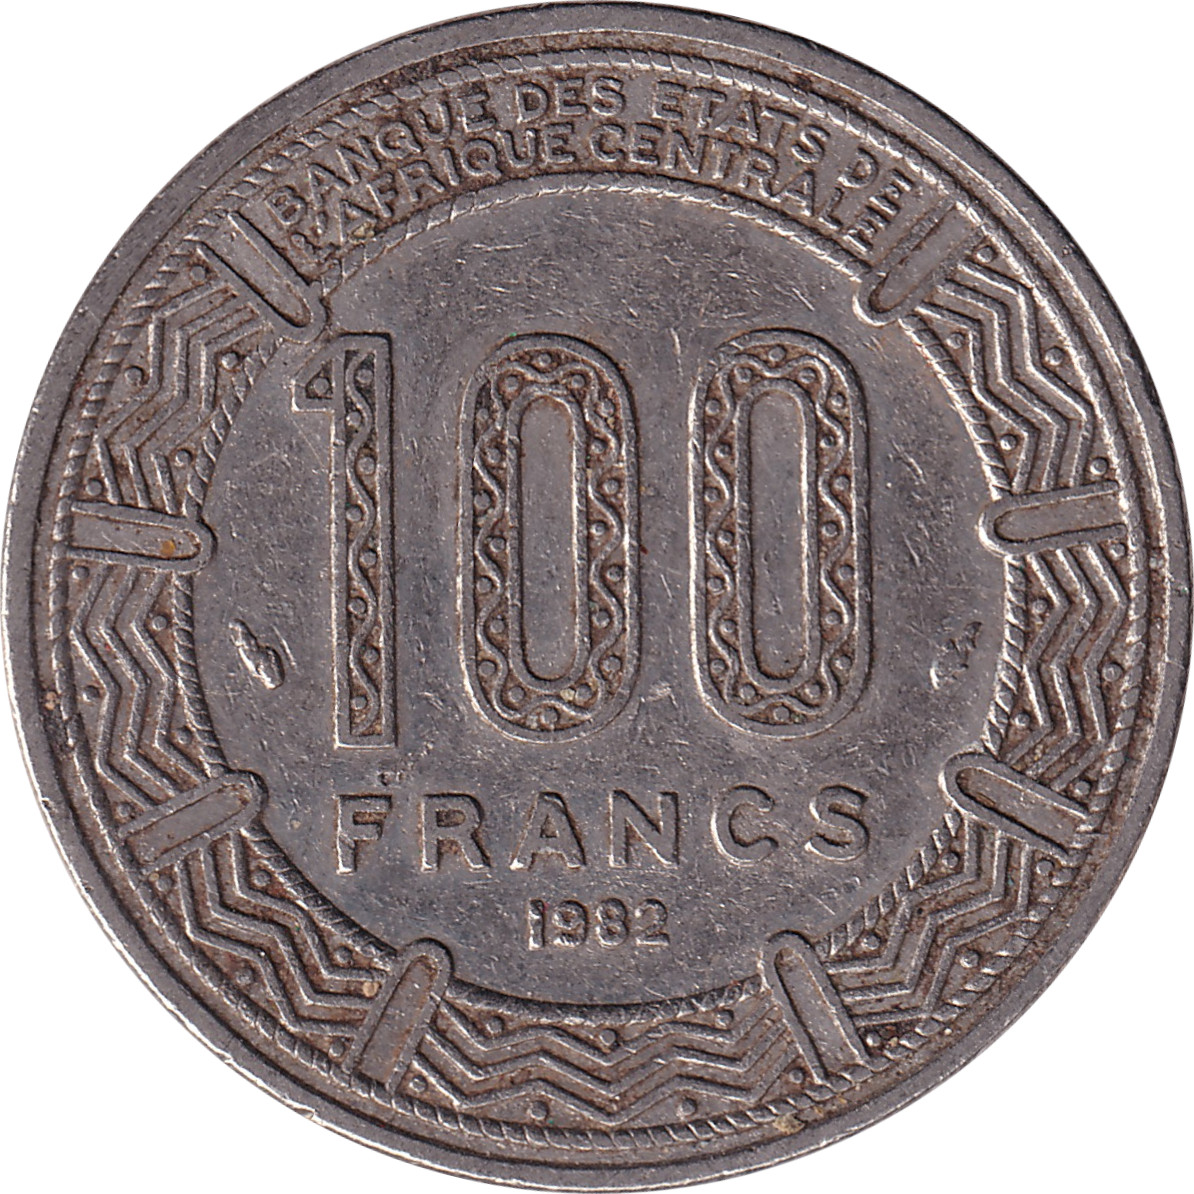 100 francs - Cameroun - Cameroon